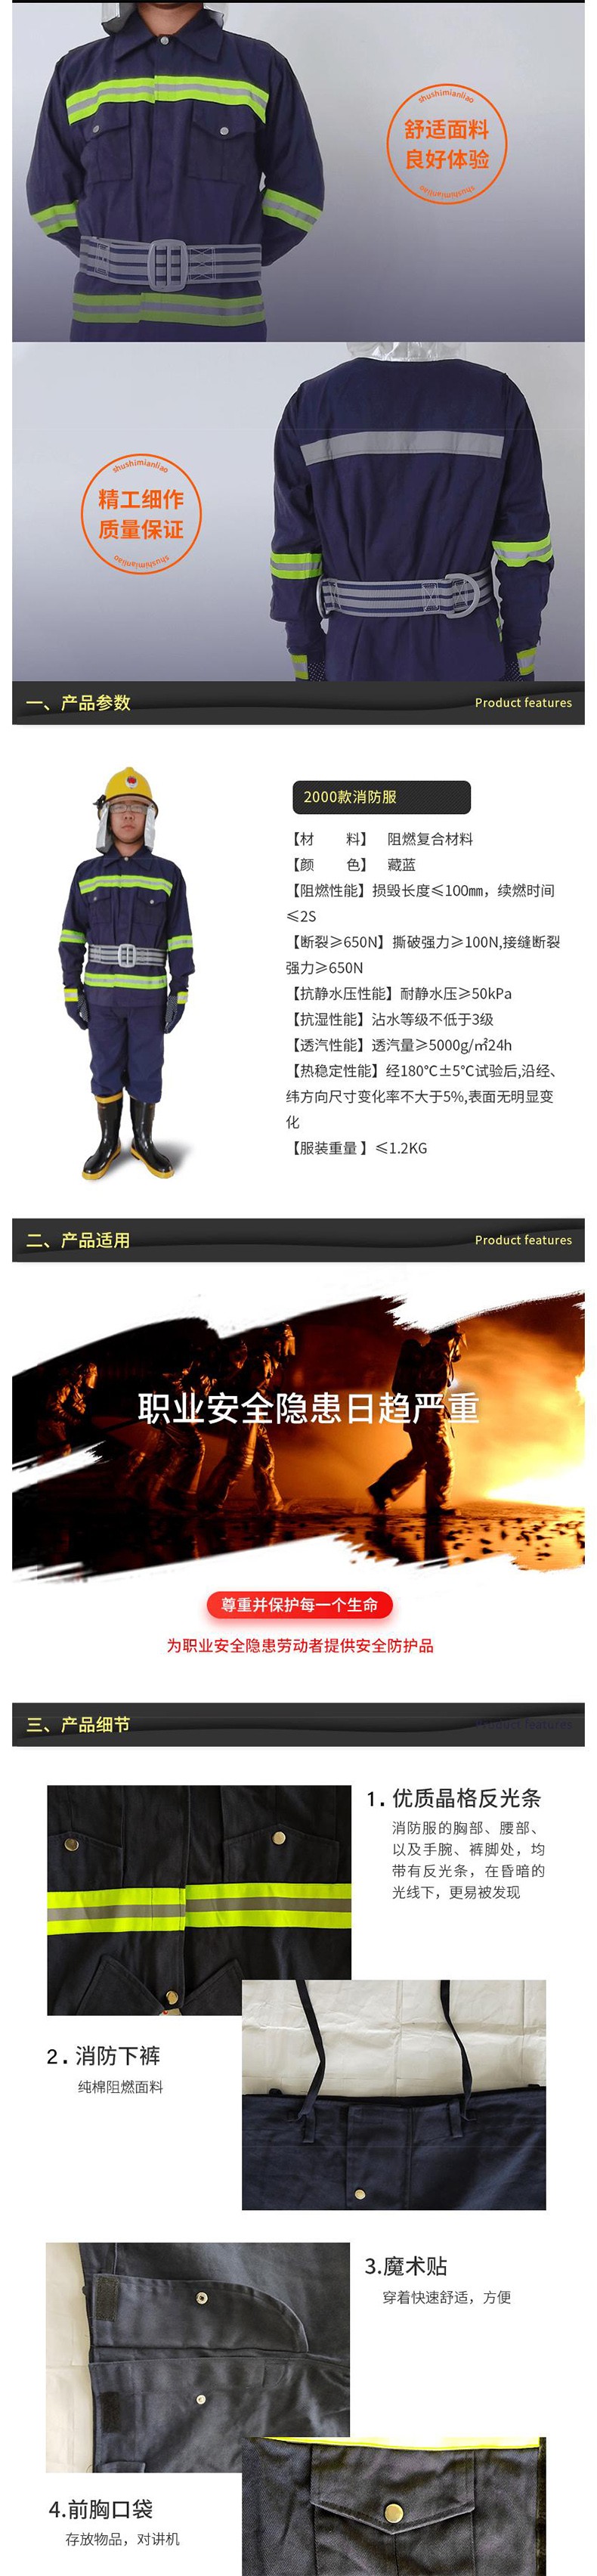 宇安消防 2000款战训服五件套图片